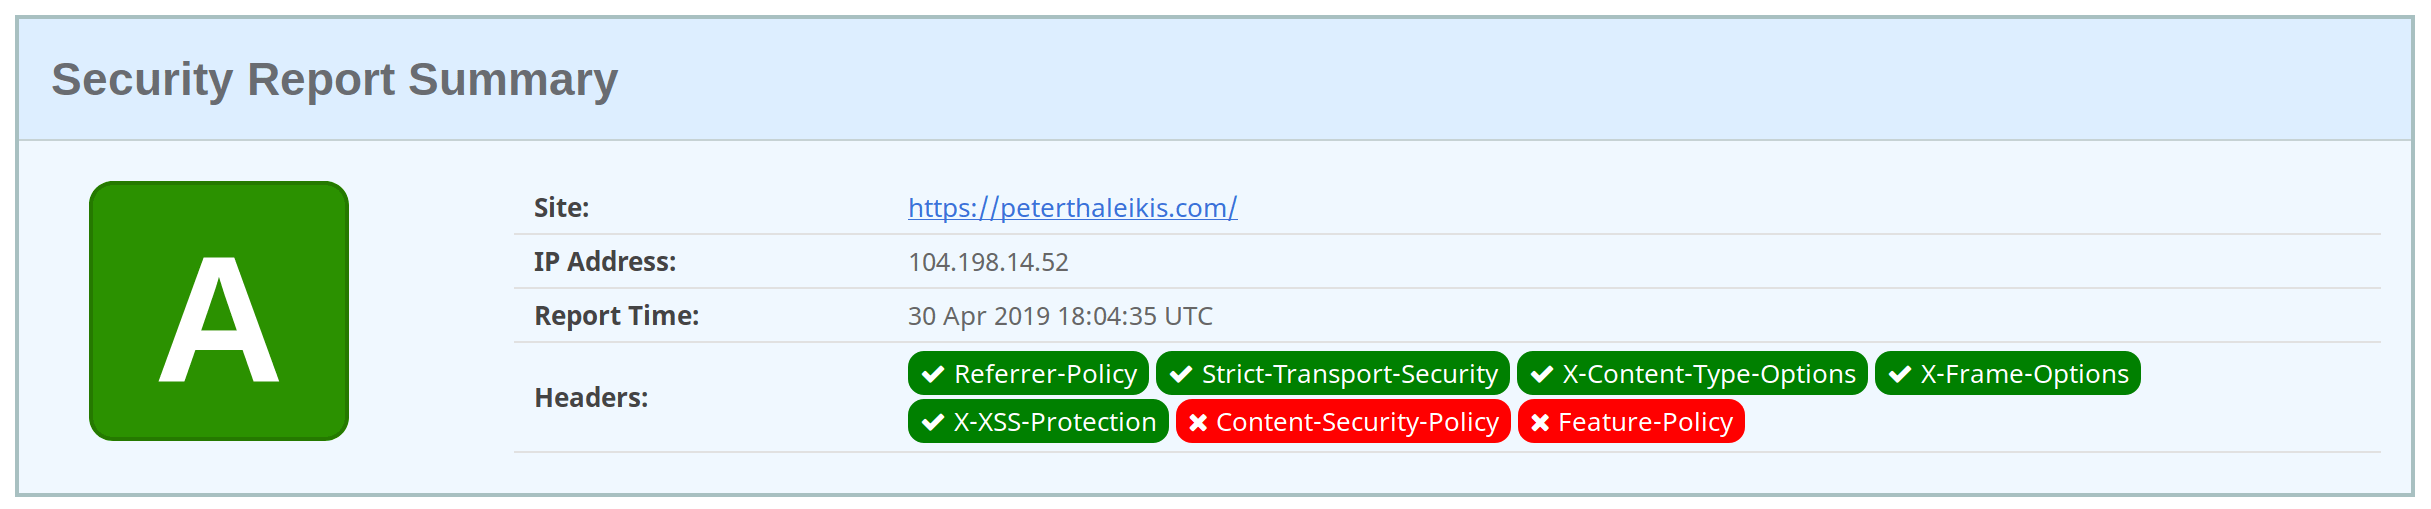 Securityheaders Result of my website after tweaking _headers